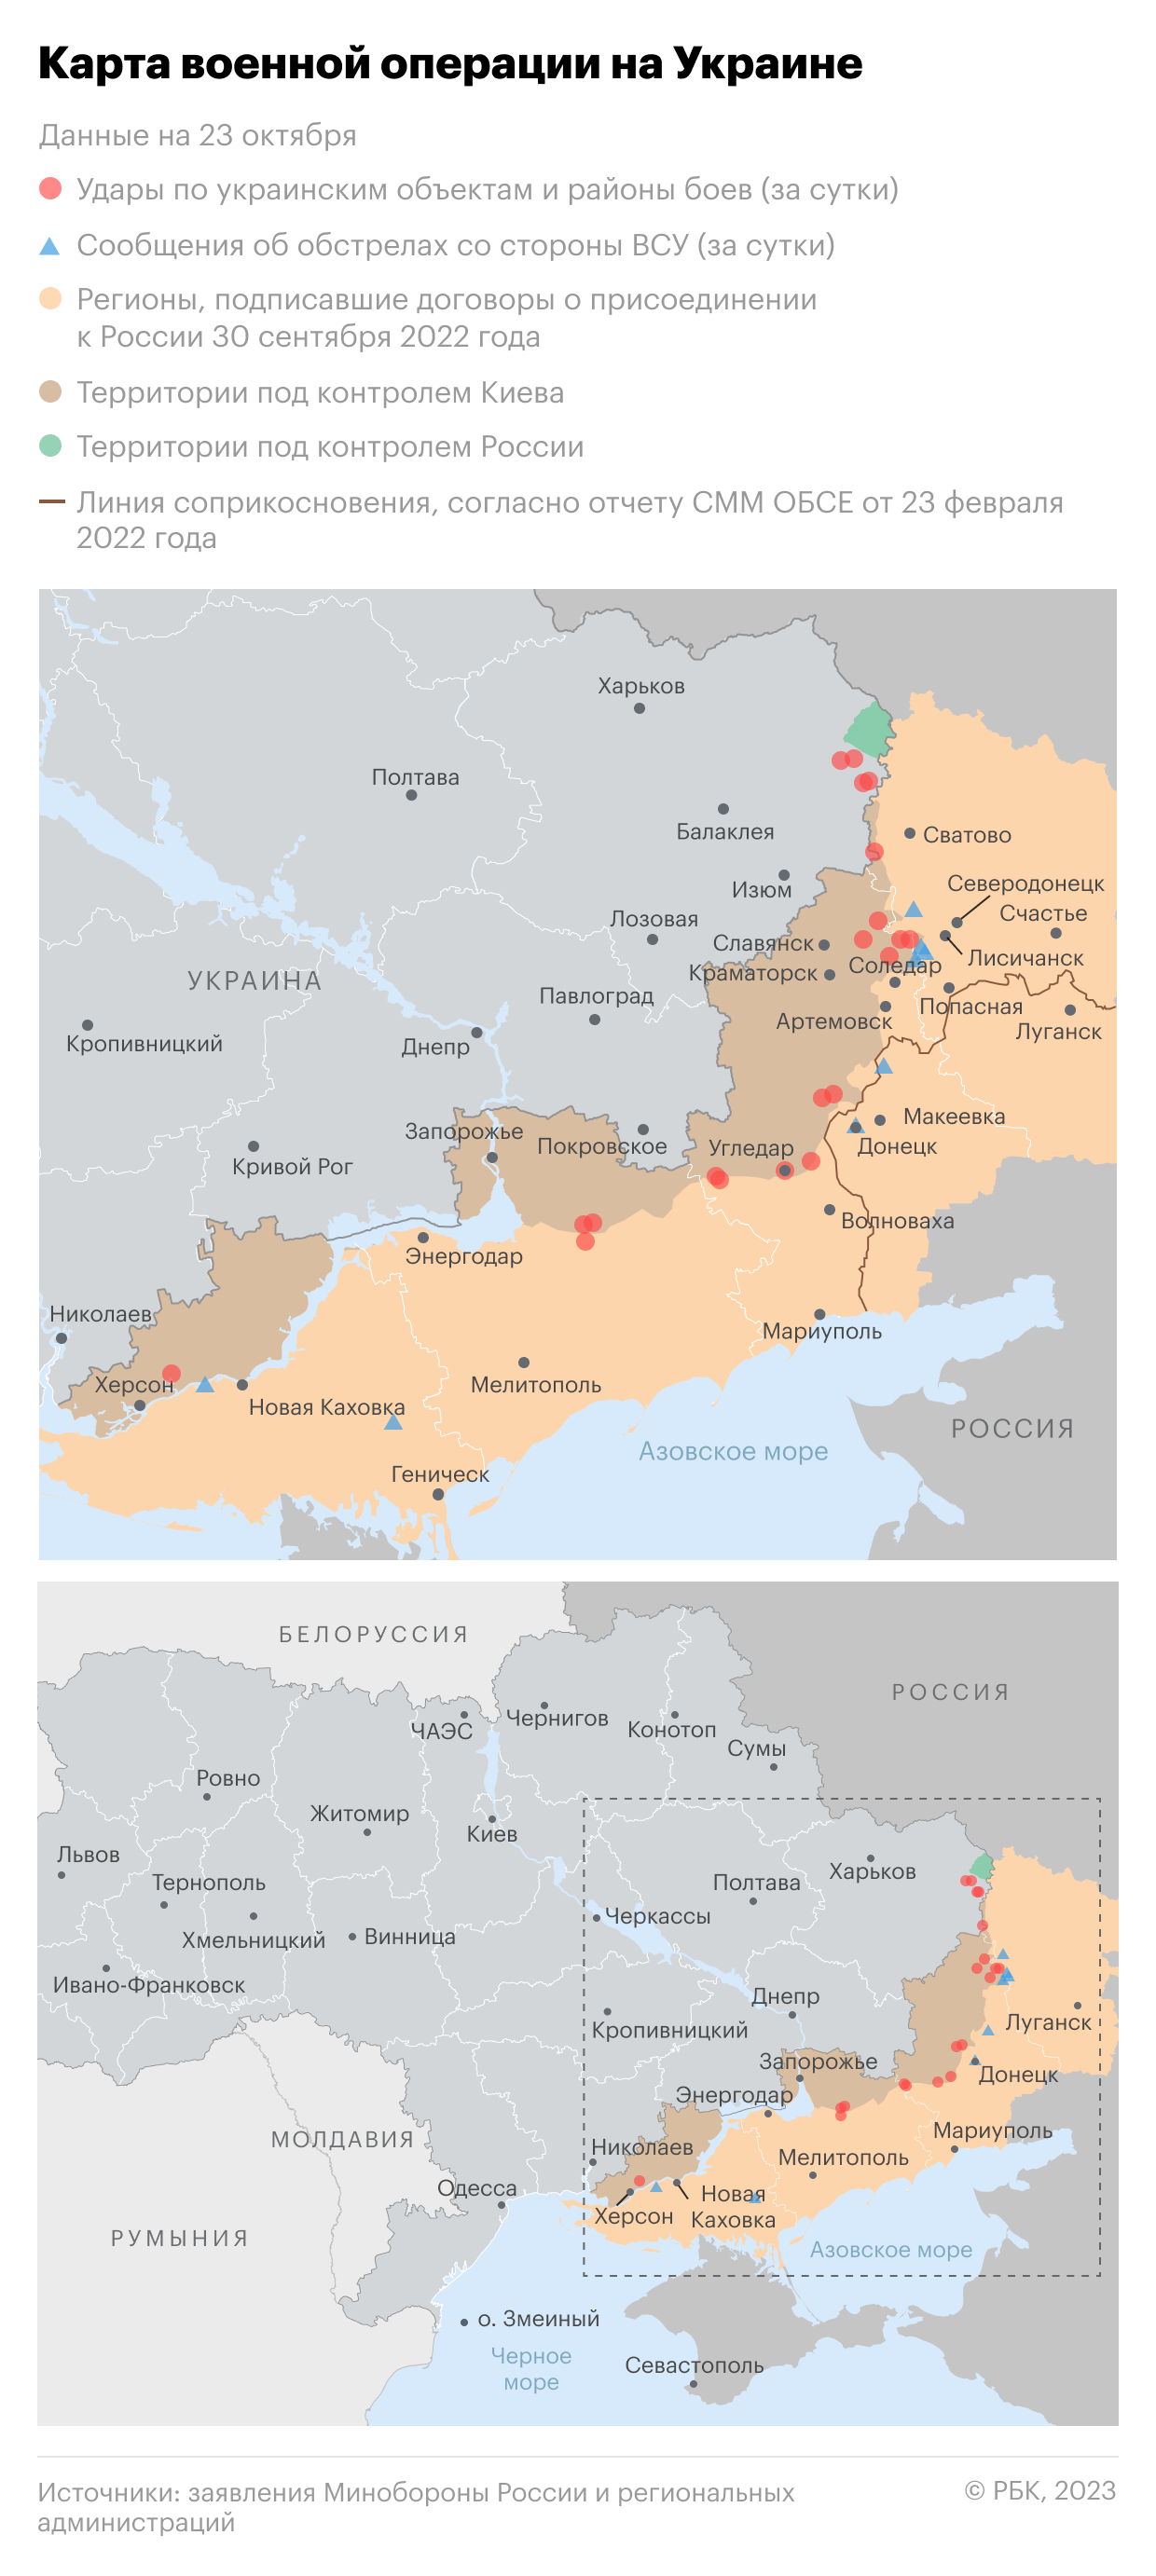 Военная операция на Украине. Карта на 23 октября